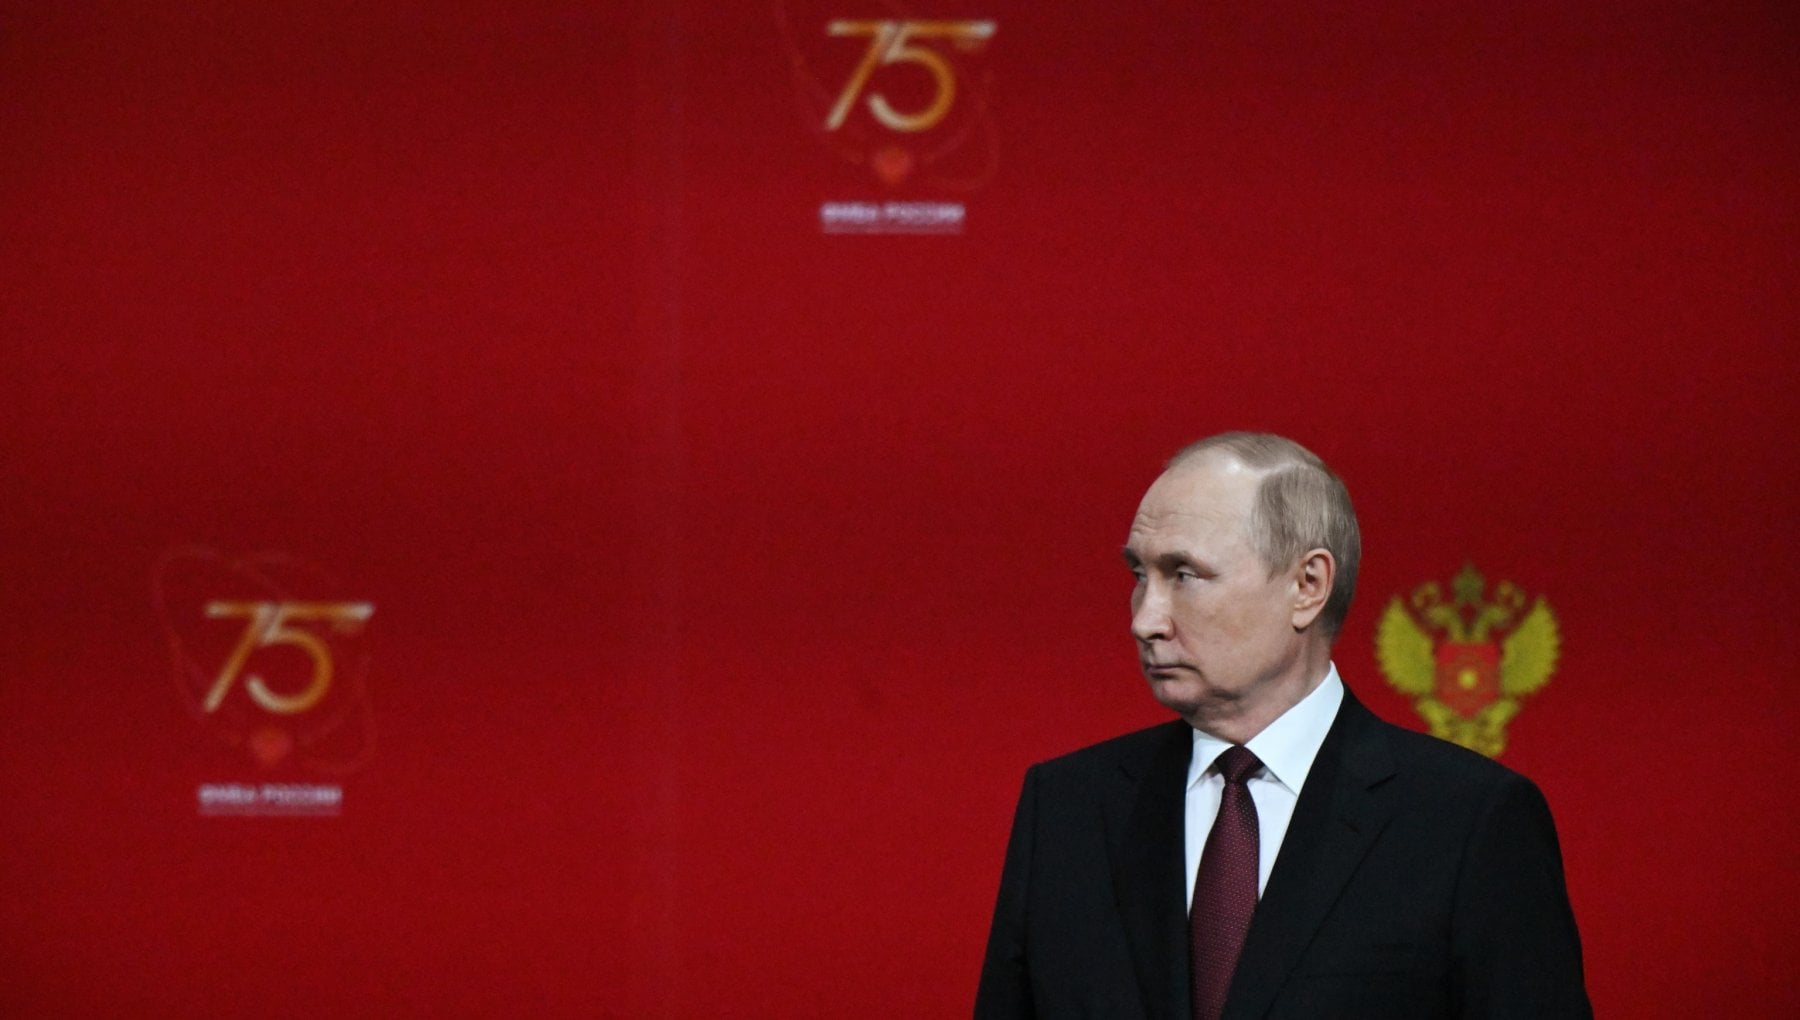 Il ritiro da Kherson è un segnale per trattare, ma Putin prepara il piano B – la Repubblica